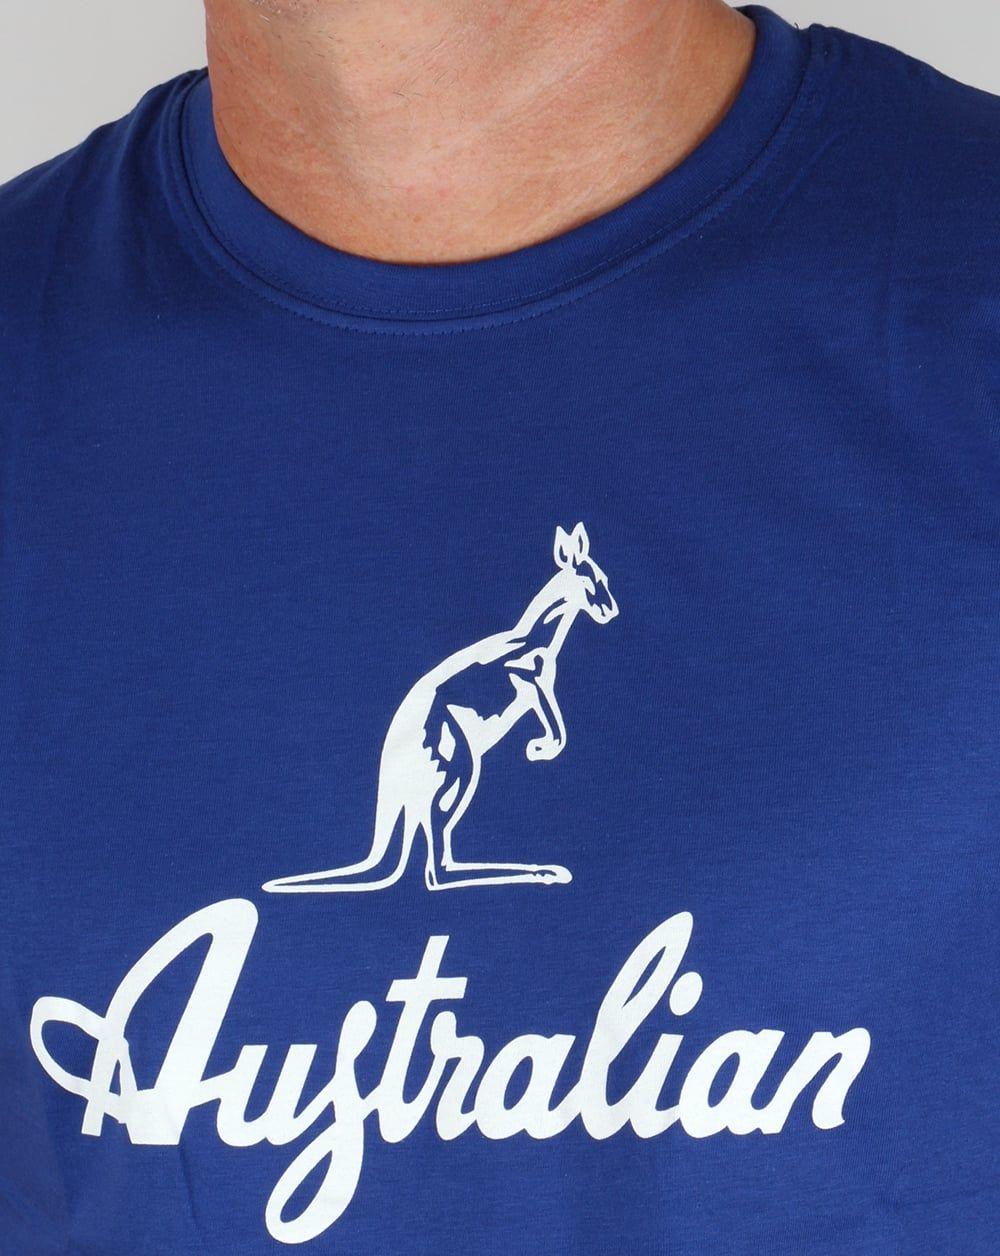 Red and White Kangaroo Logo - Australian By Lalpina Kangaroo Logo T Shirt Royal Blue White, Tee